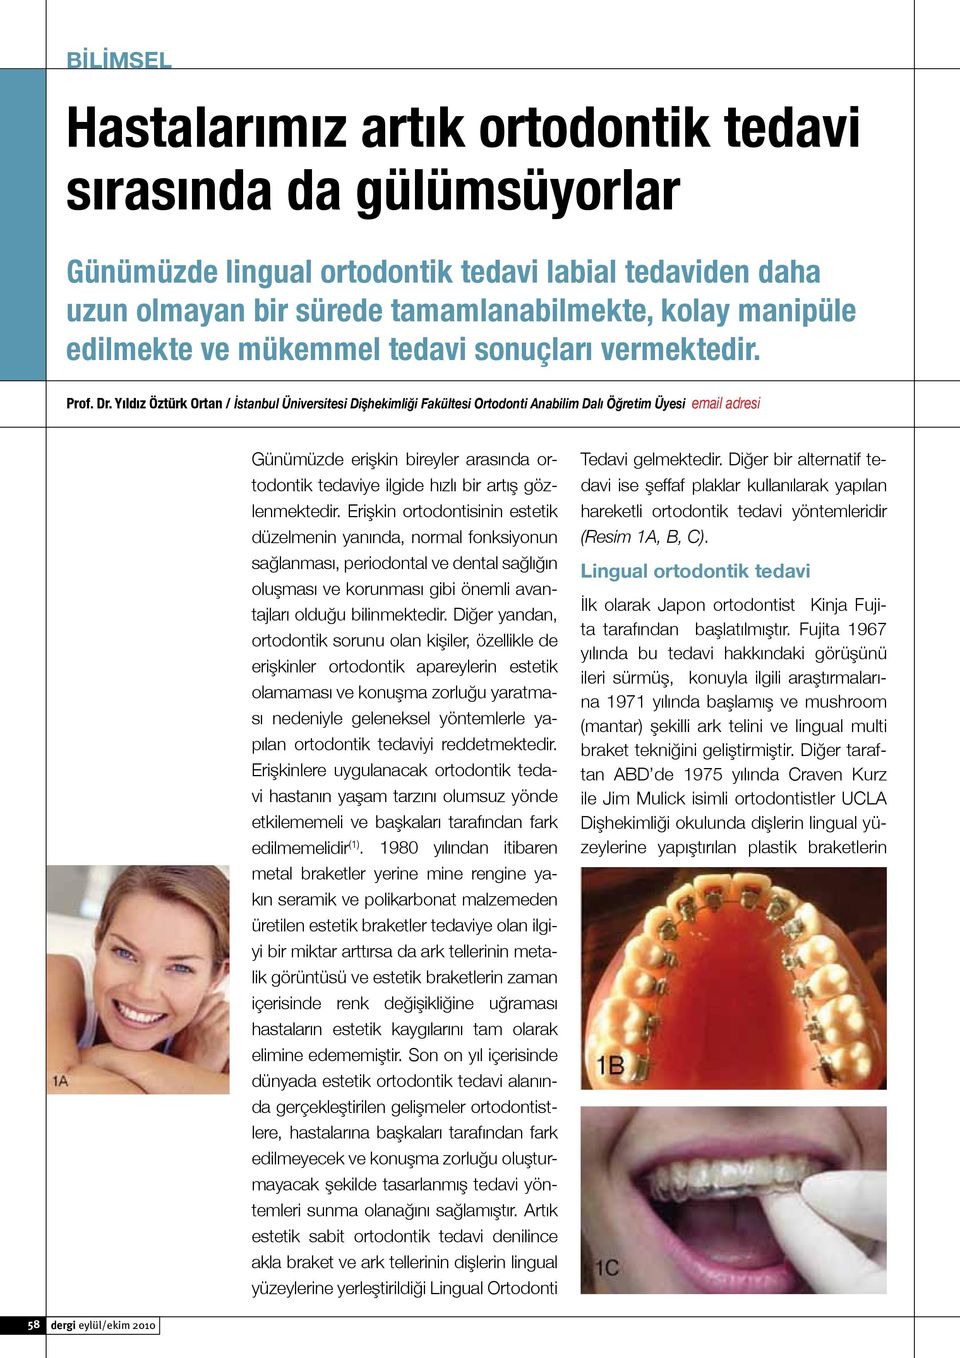 Yıldız Öztürk Ortan / İstanbul Üniversitesi Dişhekimliği Fakültesi Ortodonti Anabilim Dalı Öğretim Üyesi email adresi Günümüzde erişkin bireyler arasında ortodontik tedaviye ilgide hızlı bir artış